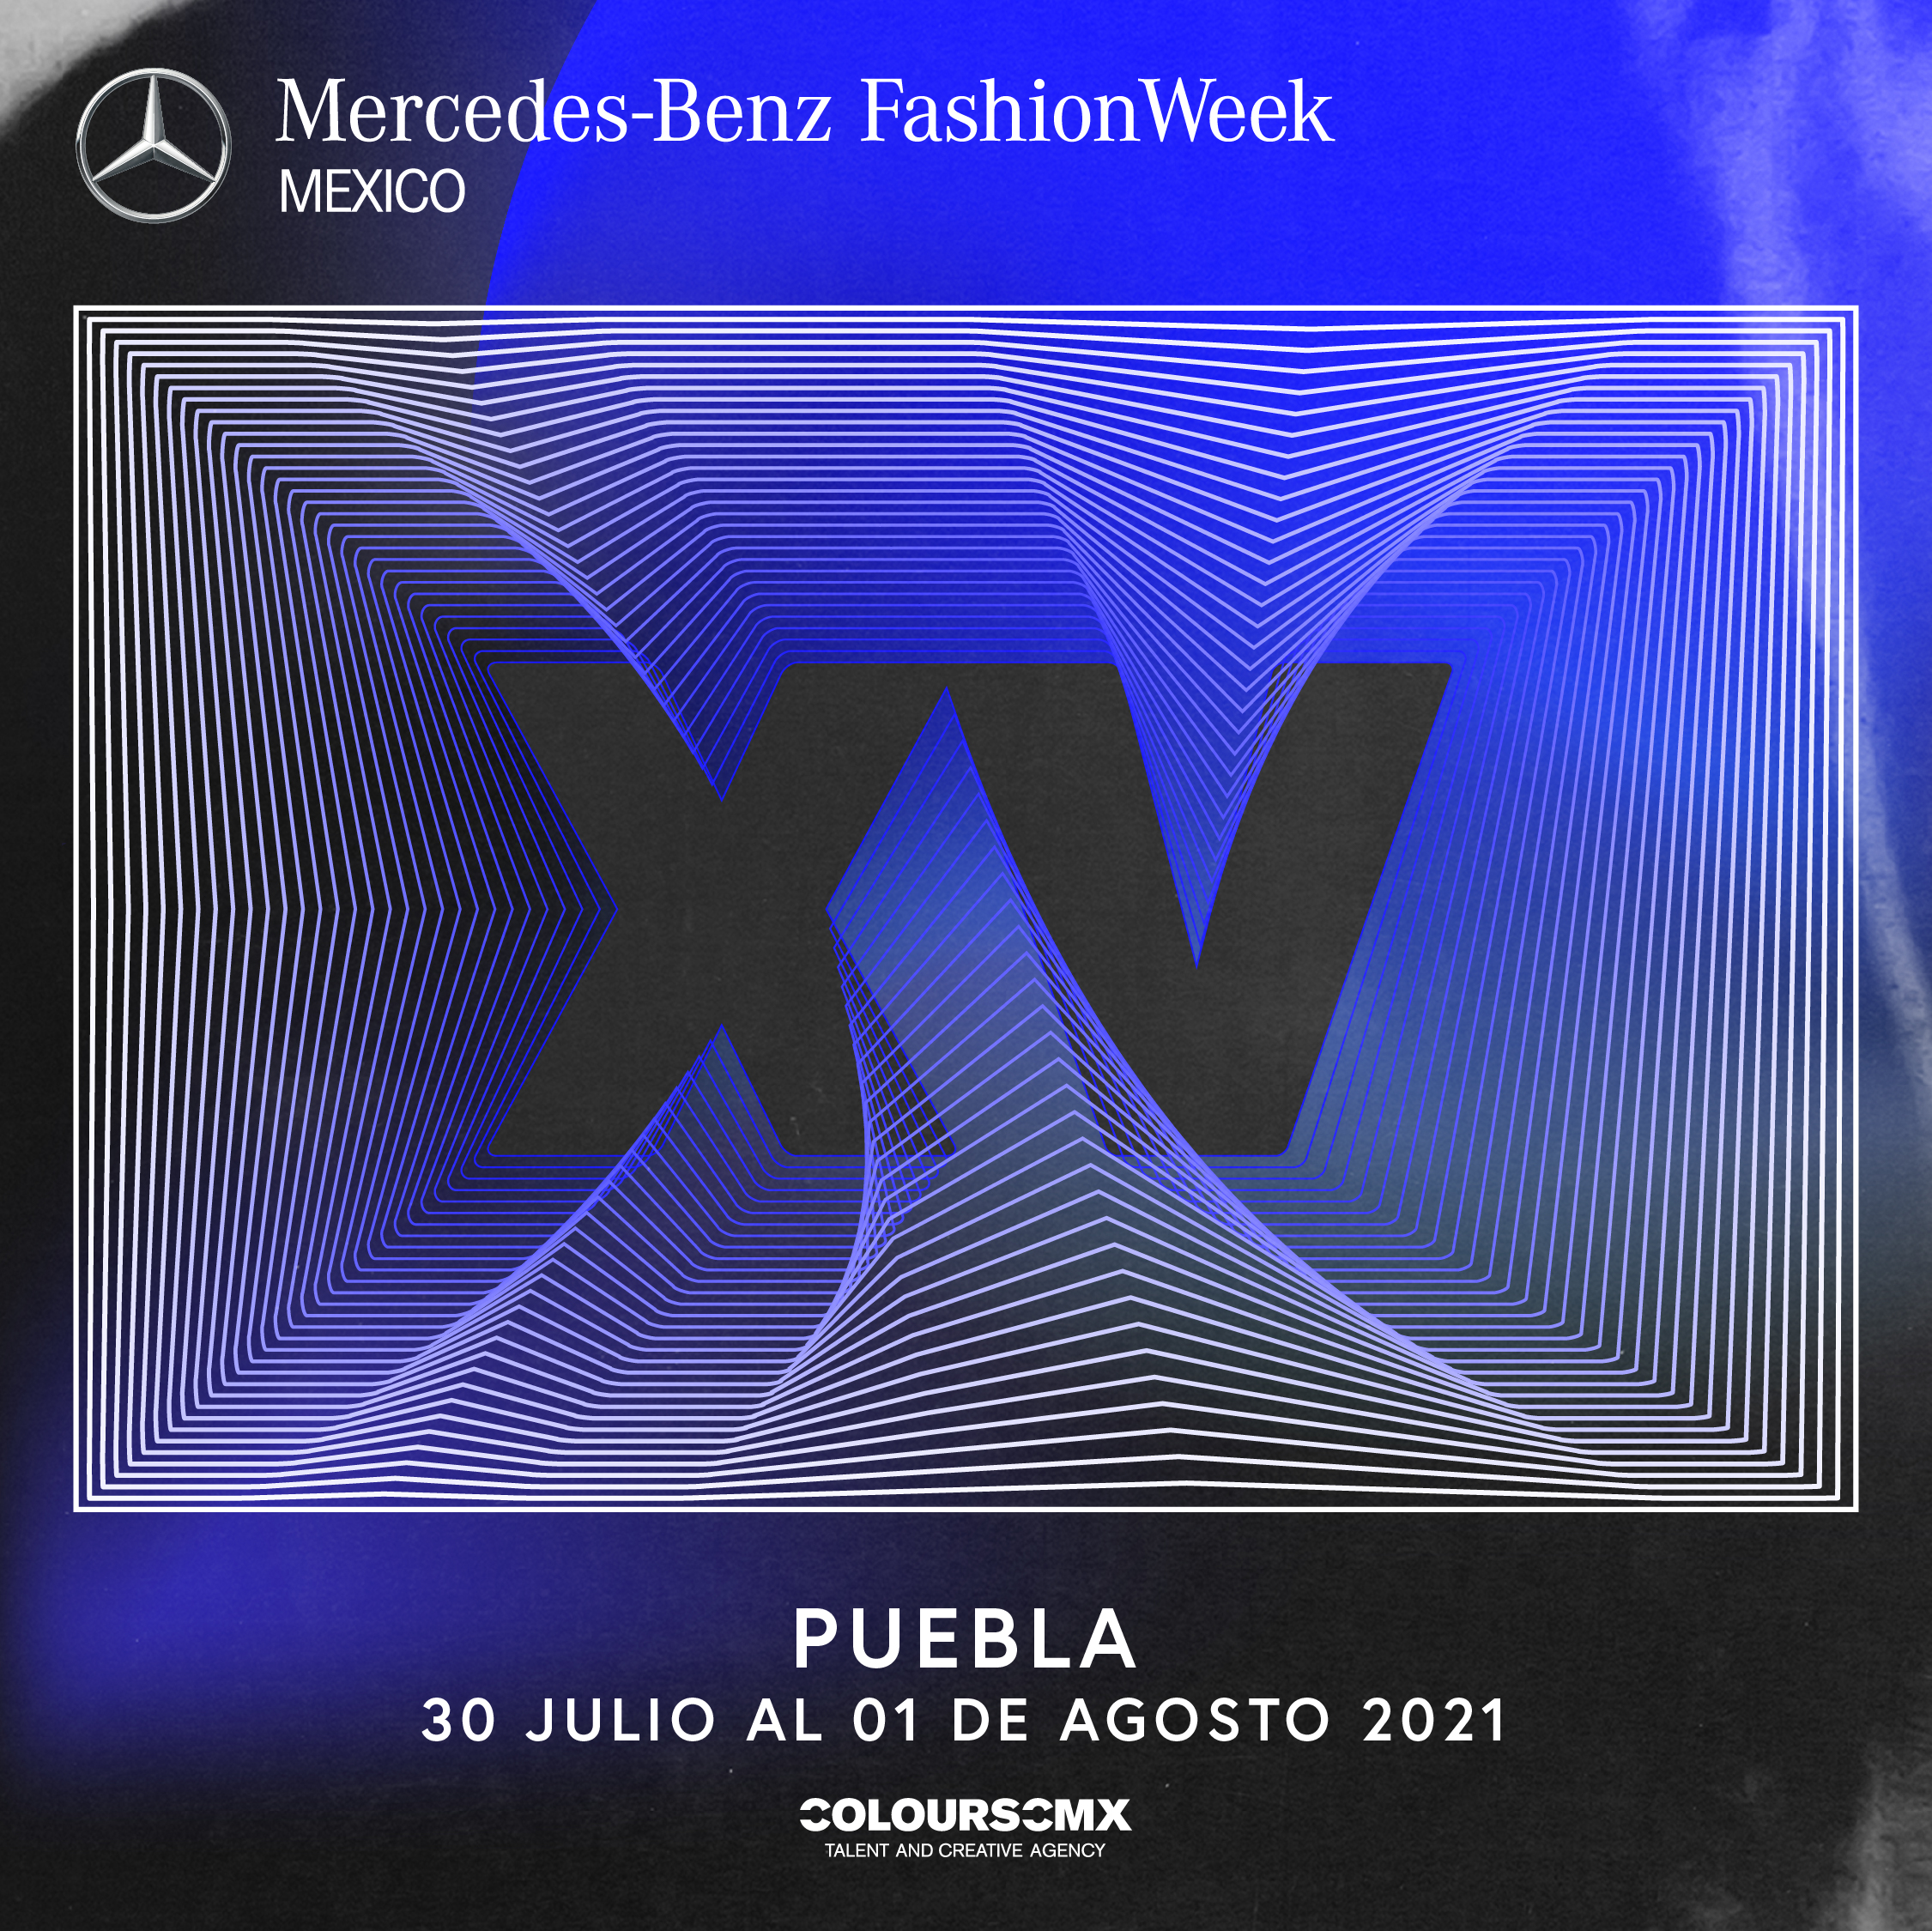 Puebla es la siguiente ciudad que visitará Mercedes-Benz Fashion Week México en el marco de celebración de sus XV años